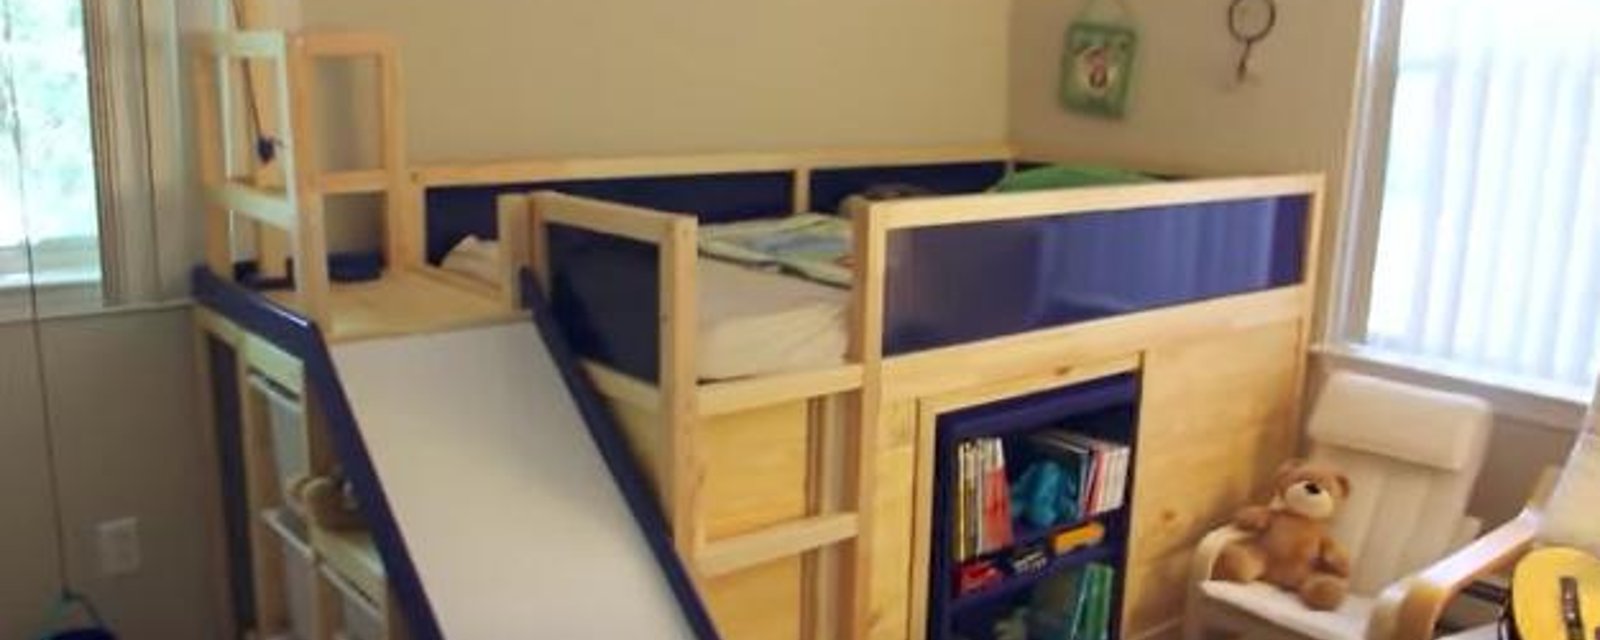 Ce père de famille amène les modifications de meubles IKEA à un tout autre niveau avec ce lit multifonction!